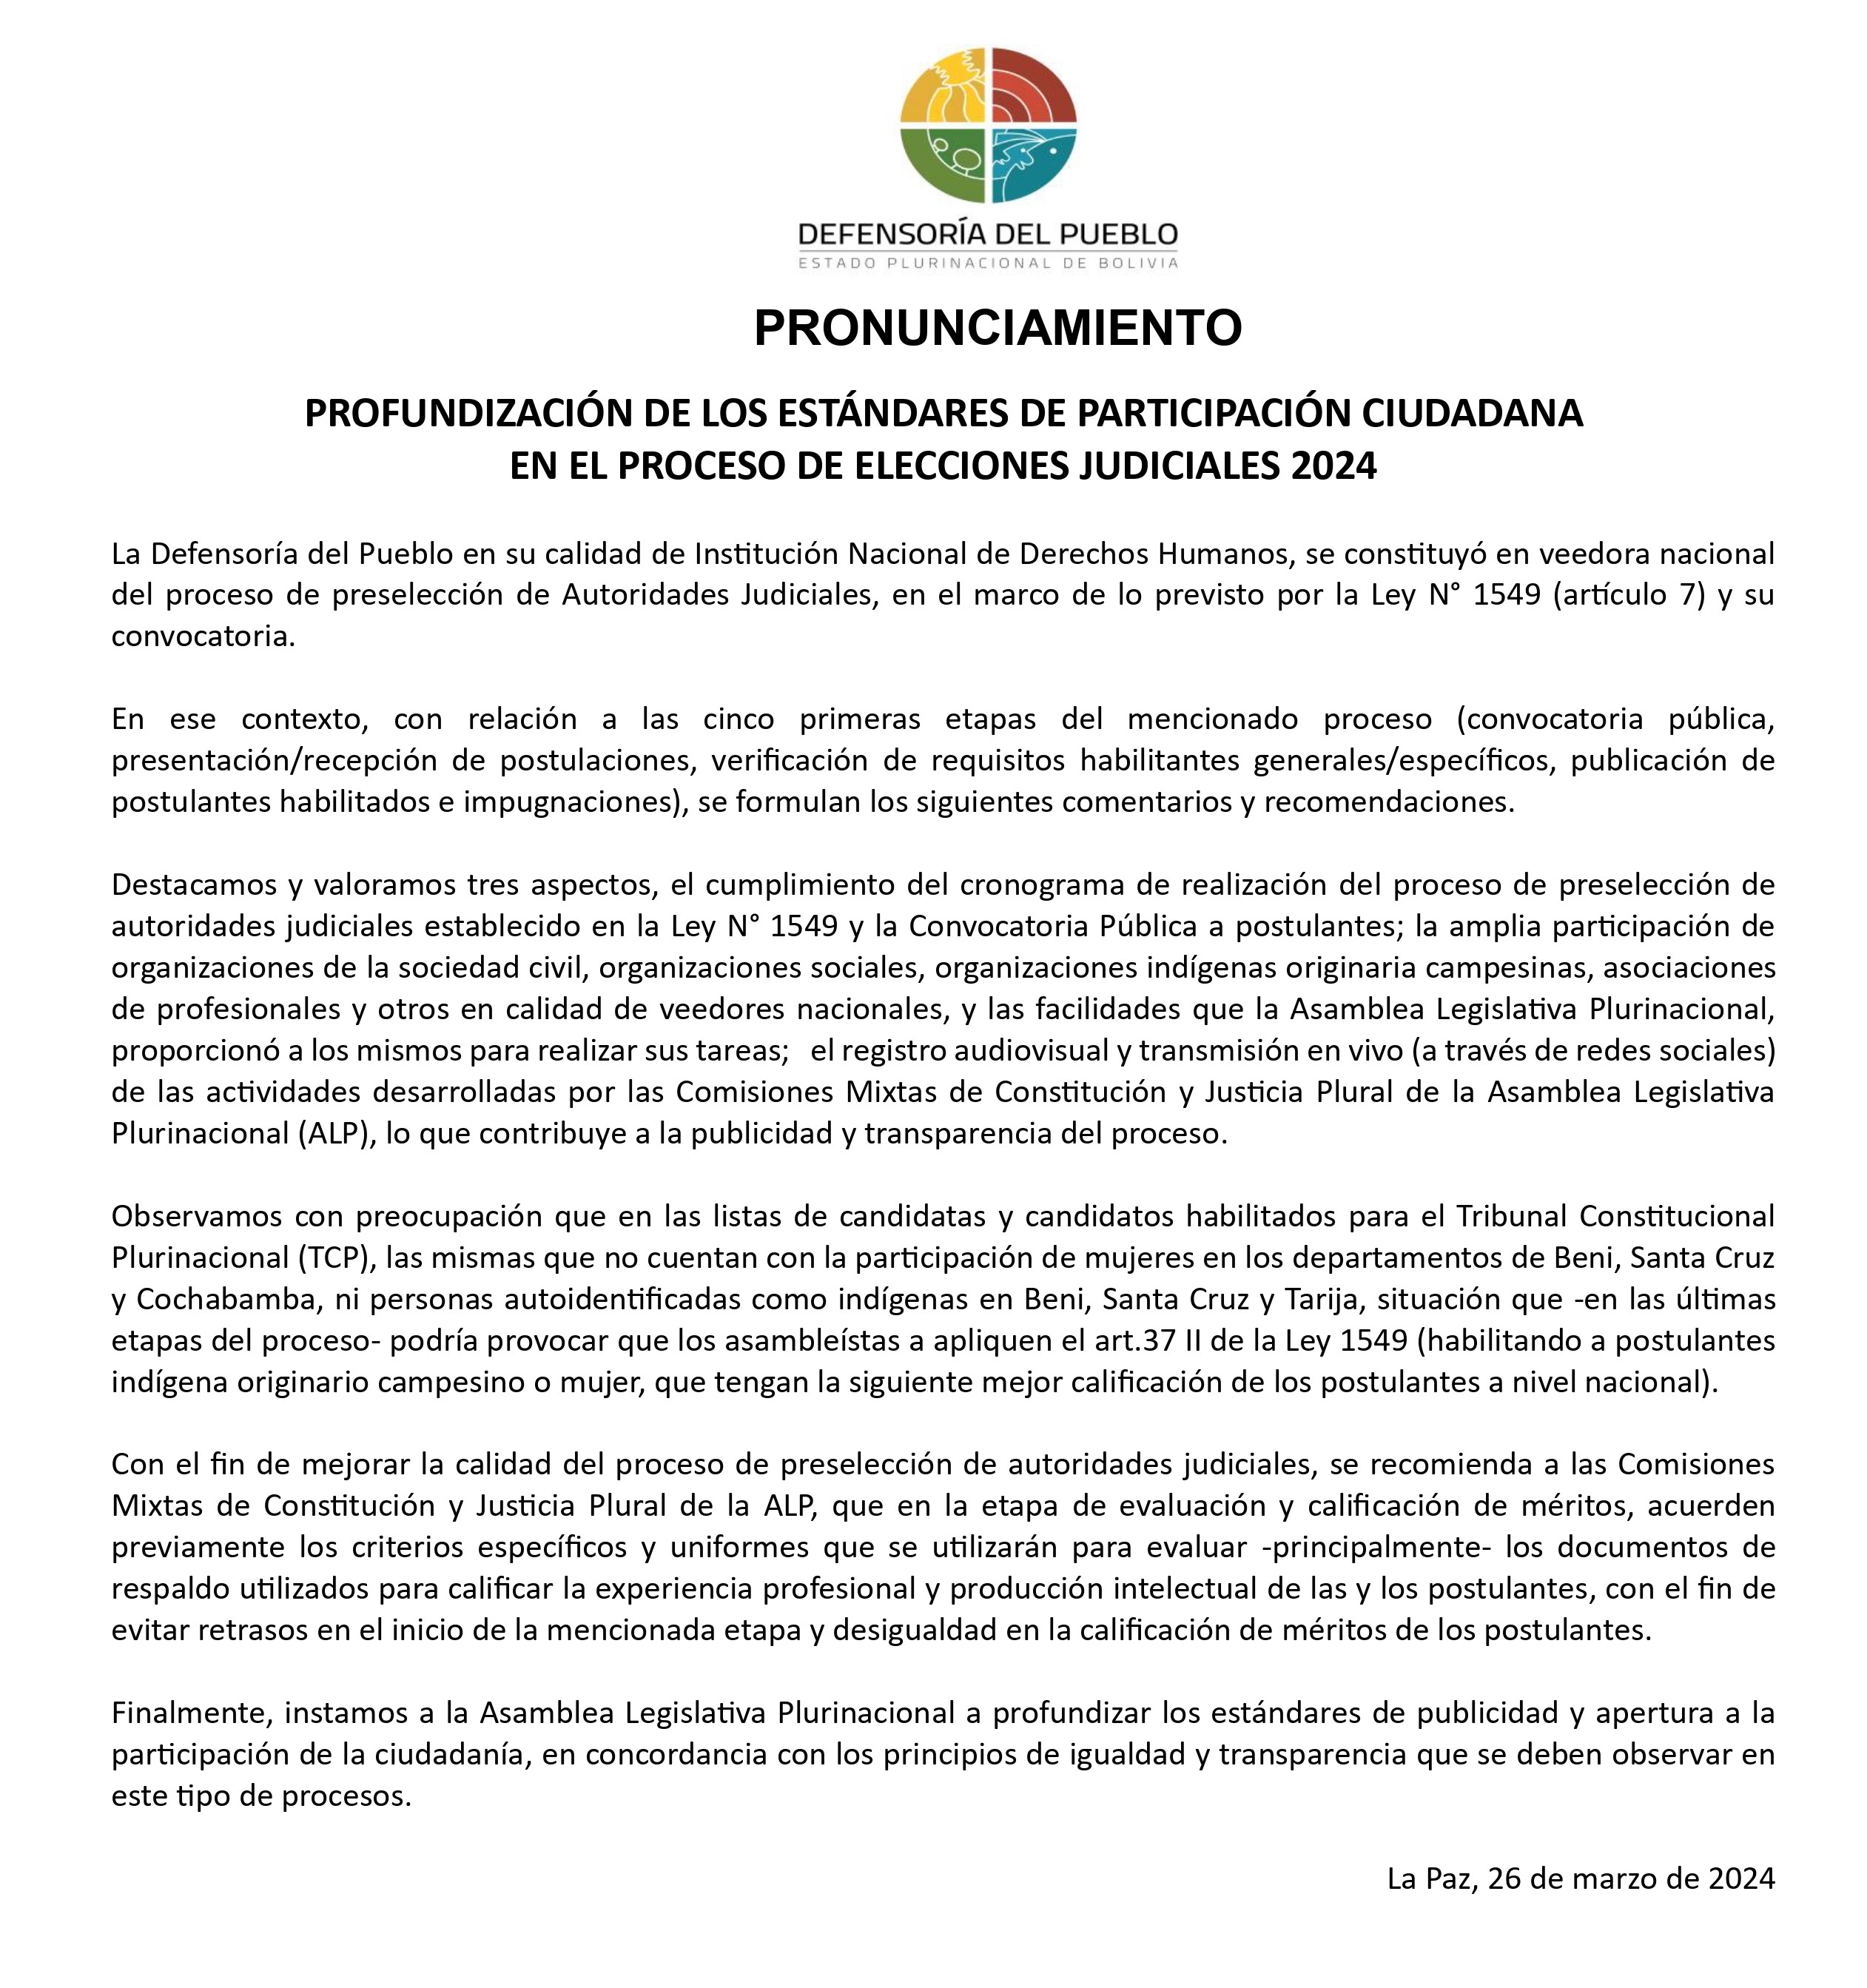 PROFUNDIZACIÓN DE LOS ESTÁNDARES DE PARTICIPACIÓN CIUDADANA EN EL PROCESO DE ELECCIONES JUDICIALES 2024